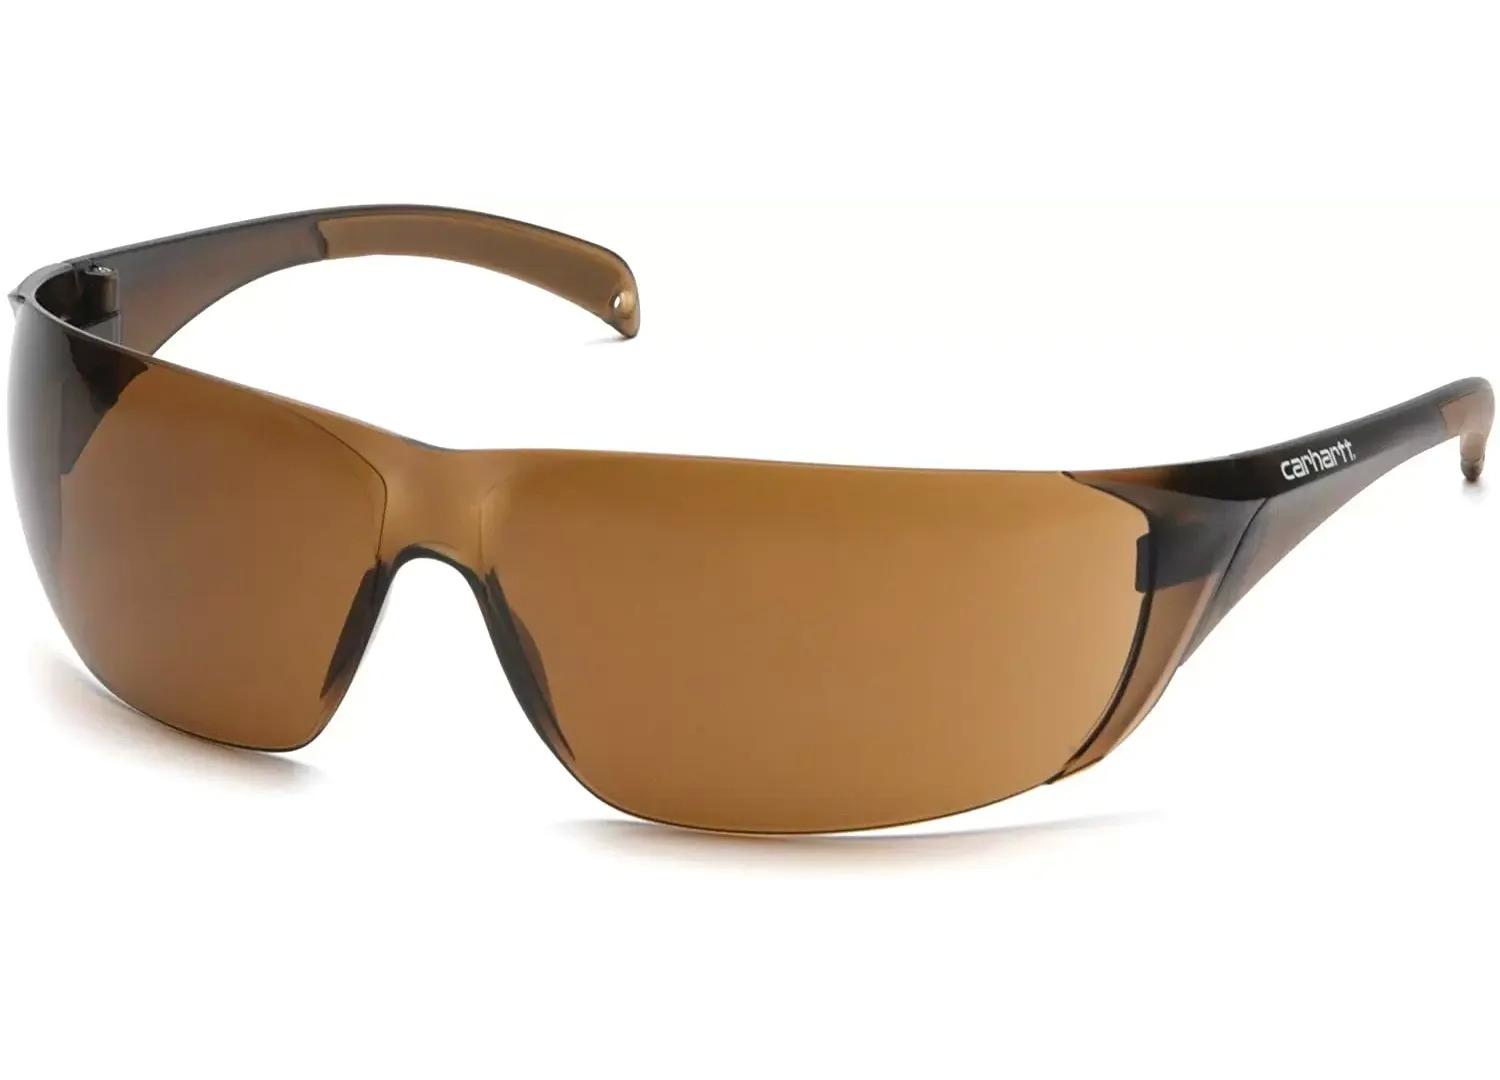 Carhartt Billings Sandstone Bronze Lens Safety Sunglasses for $2.99